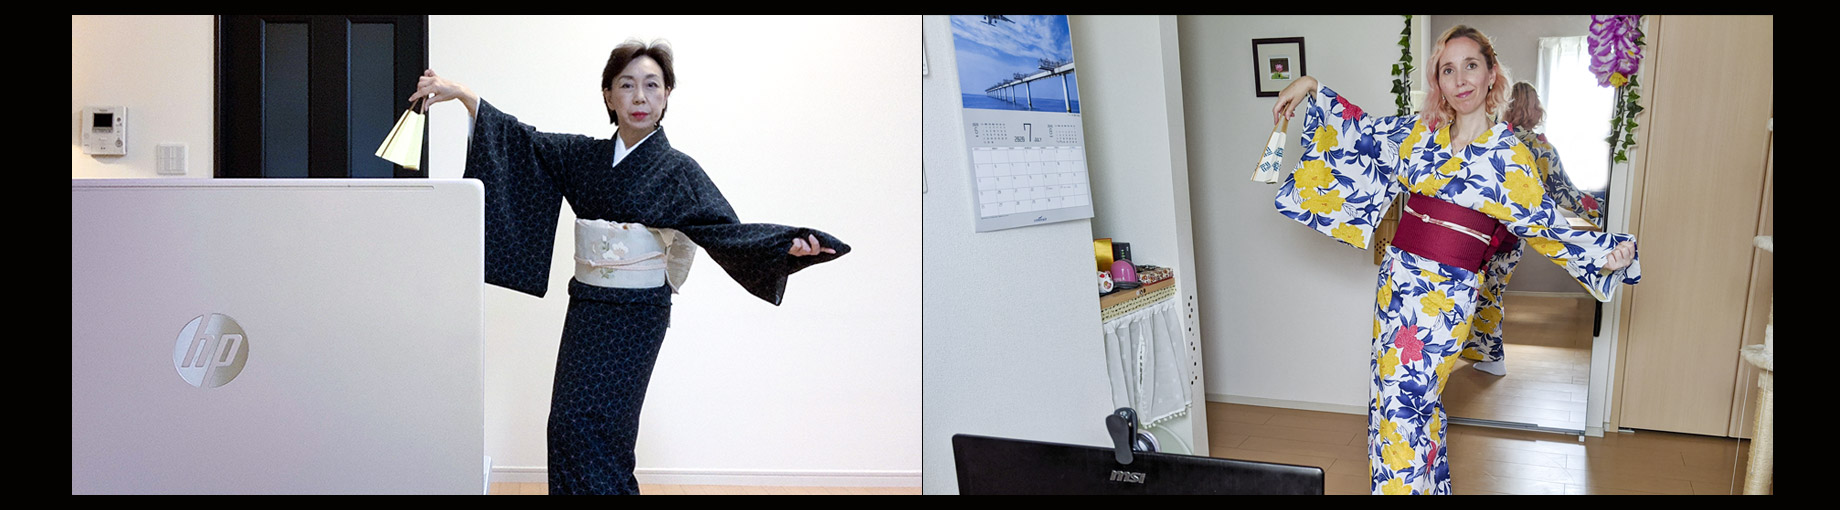 日本舞踊オンライン教室 西川陽子